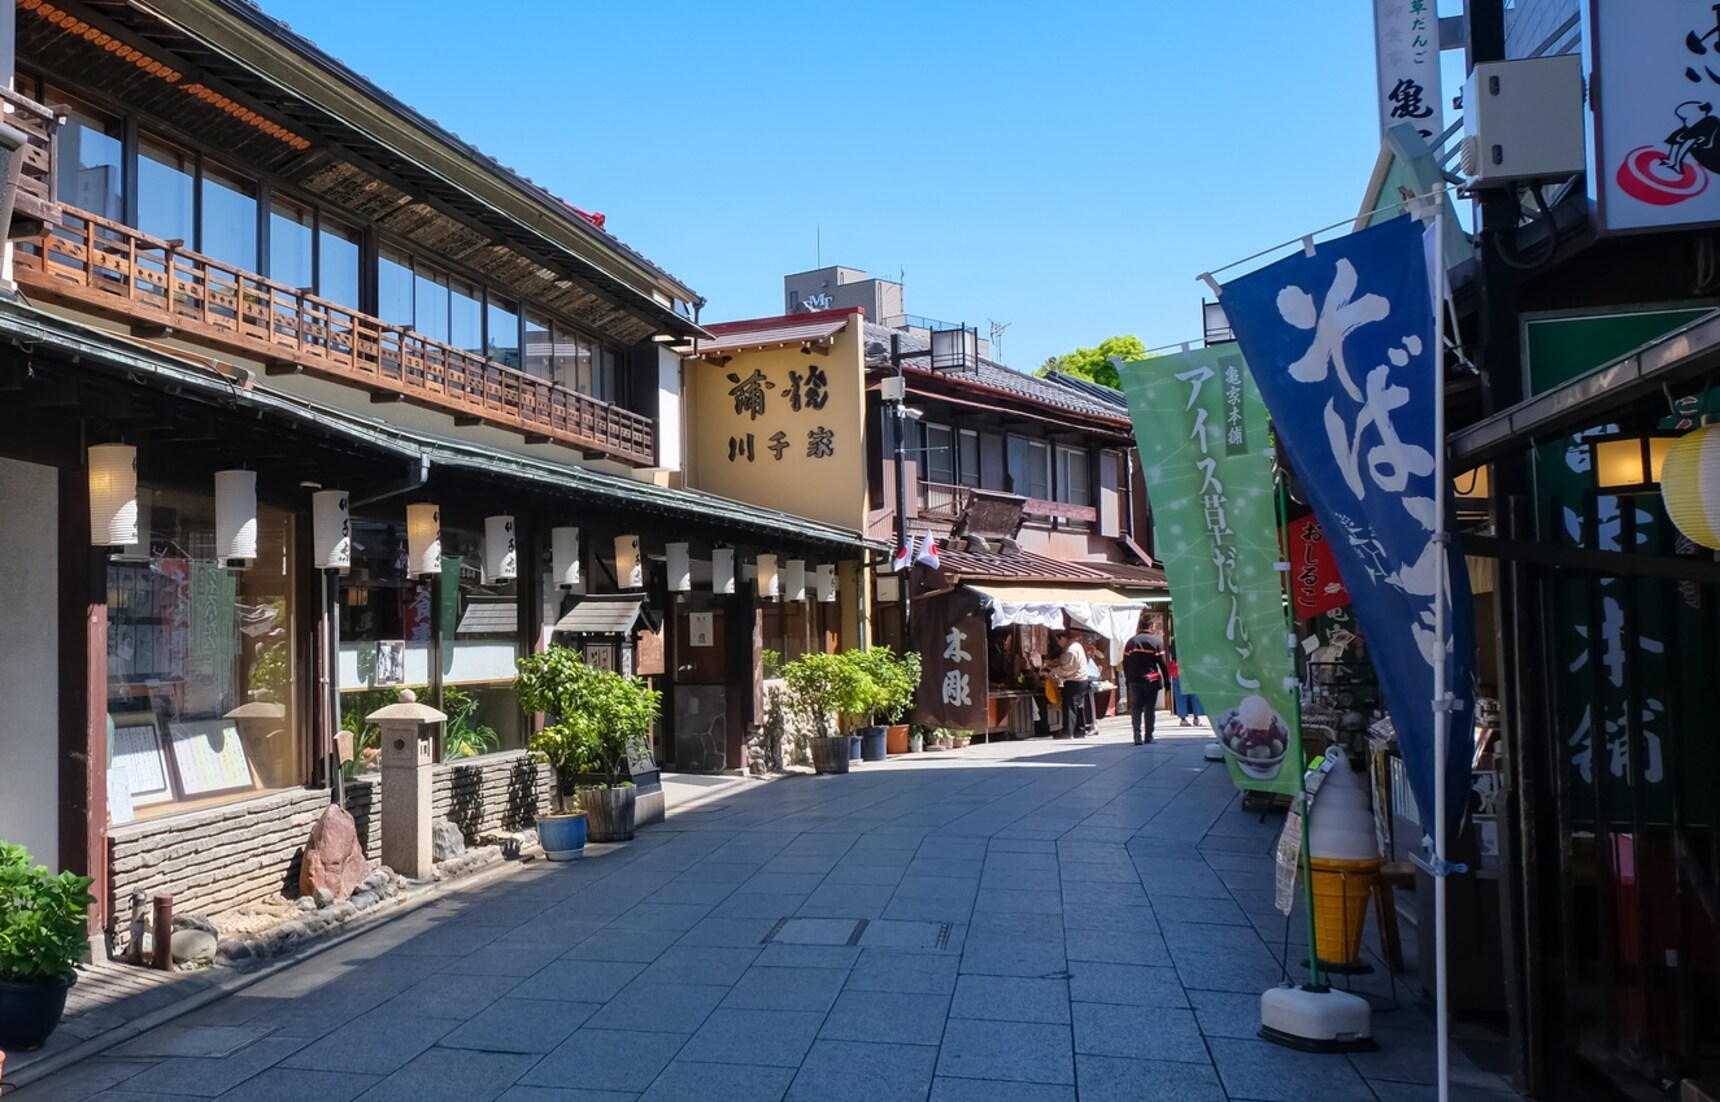 แนะนำ 5 ย่านเมืองเก่าบรรยากาศย้อนยุคในโตเกียว